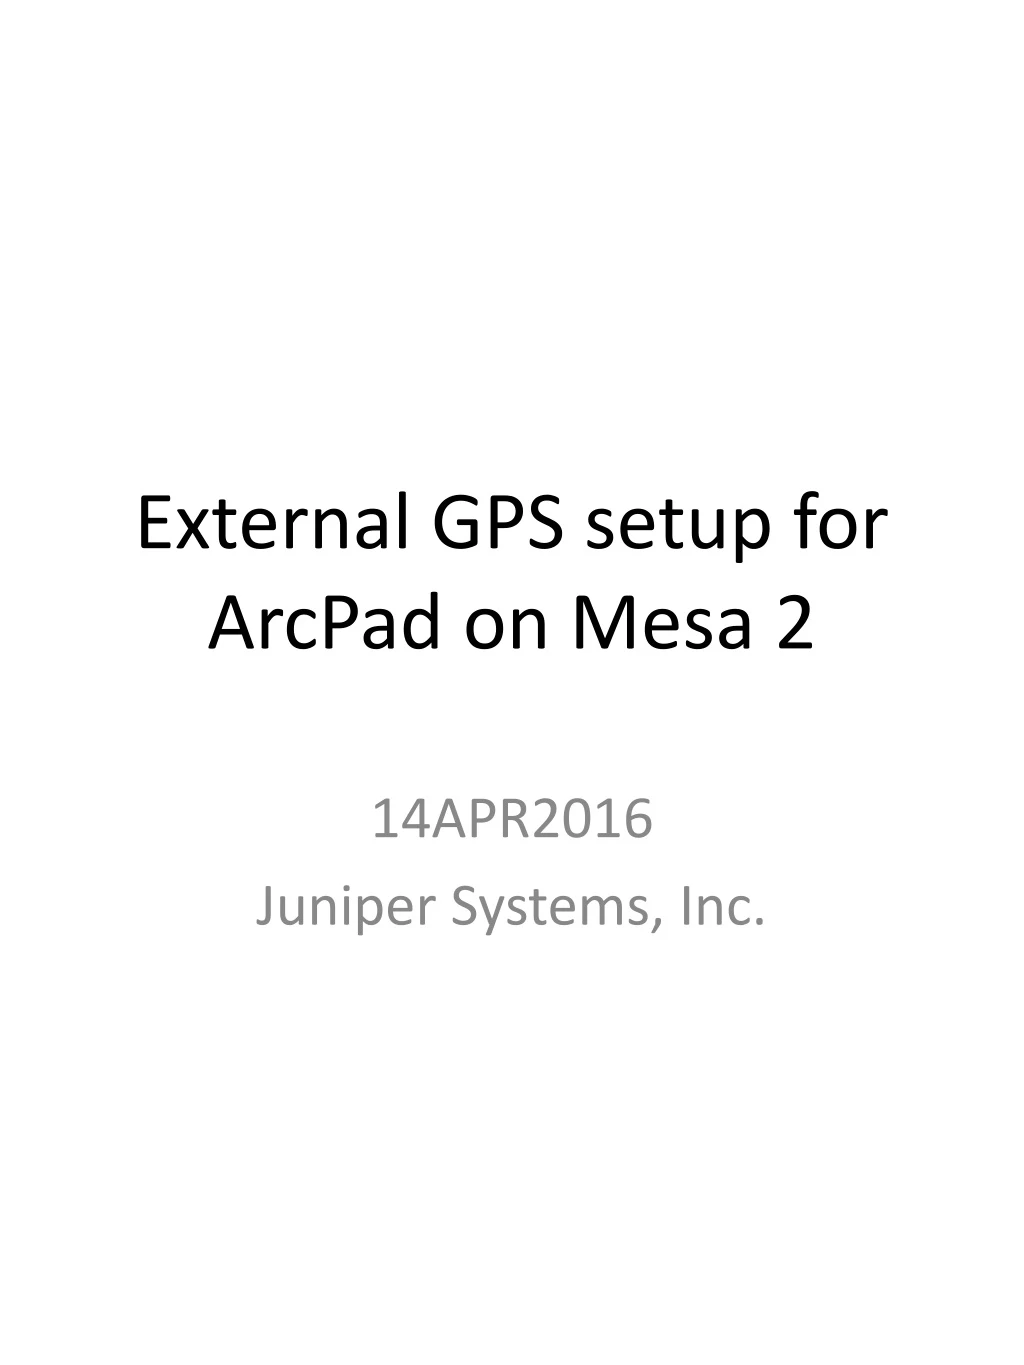 external gps setup for arcpad on mesa 2